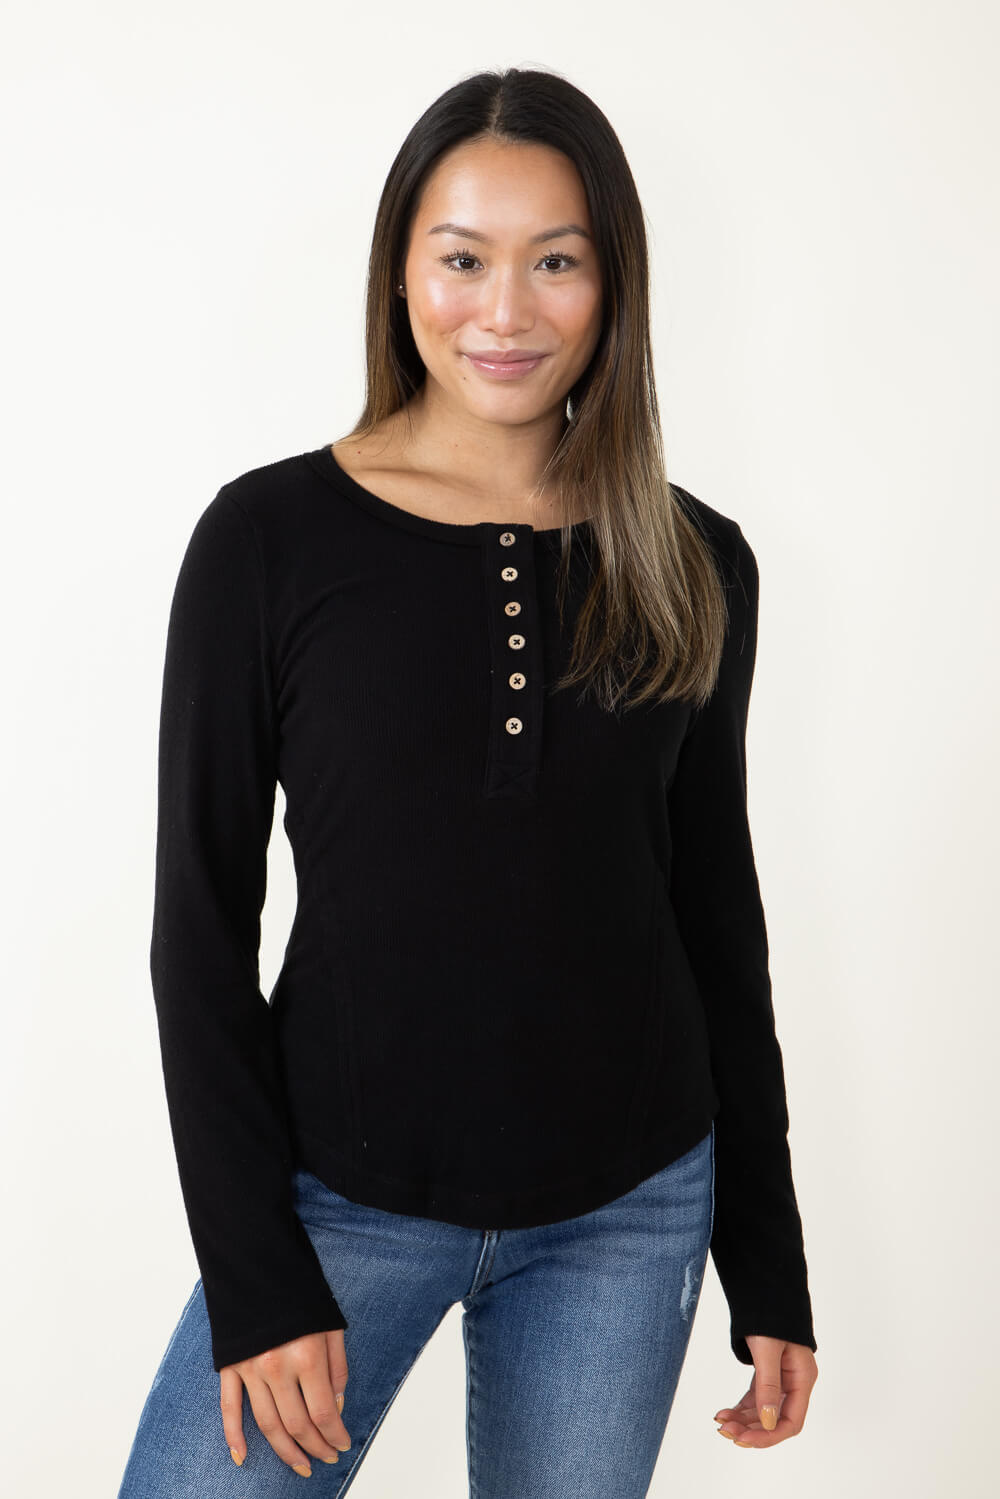 Soft Brushed Glik\'s in Black for NT11360-BLACK Top Henley Knit – Women 